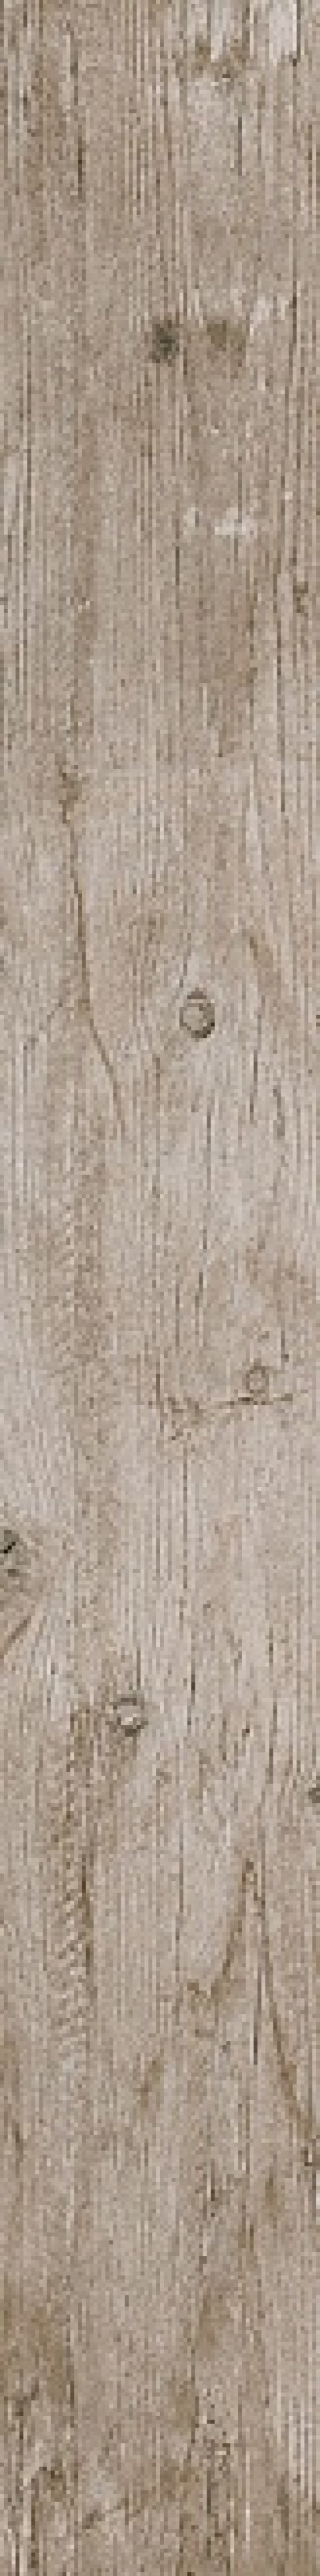 Керамический гранит Антик Вуд беж обрезной DL750500R (KERAMA MARAZZI)